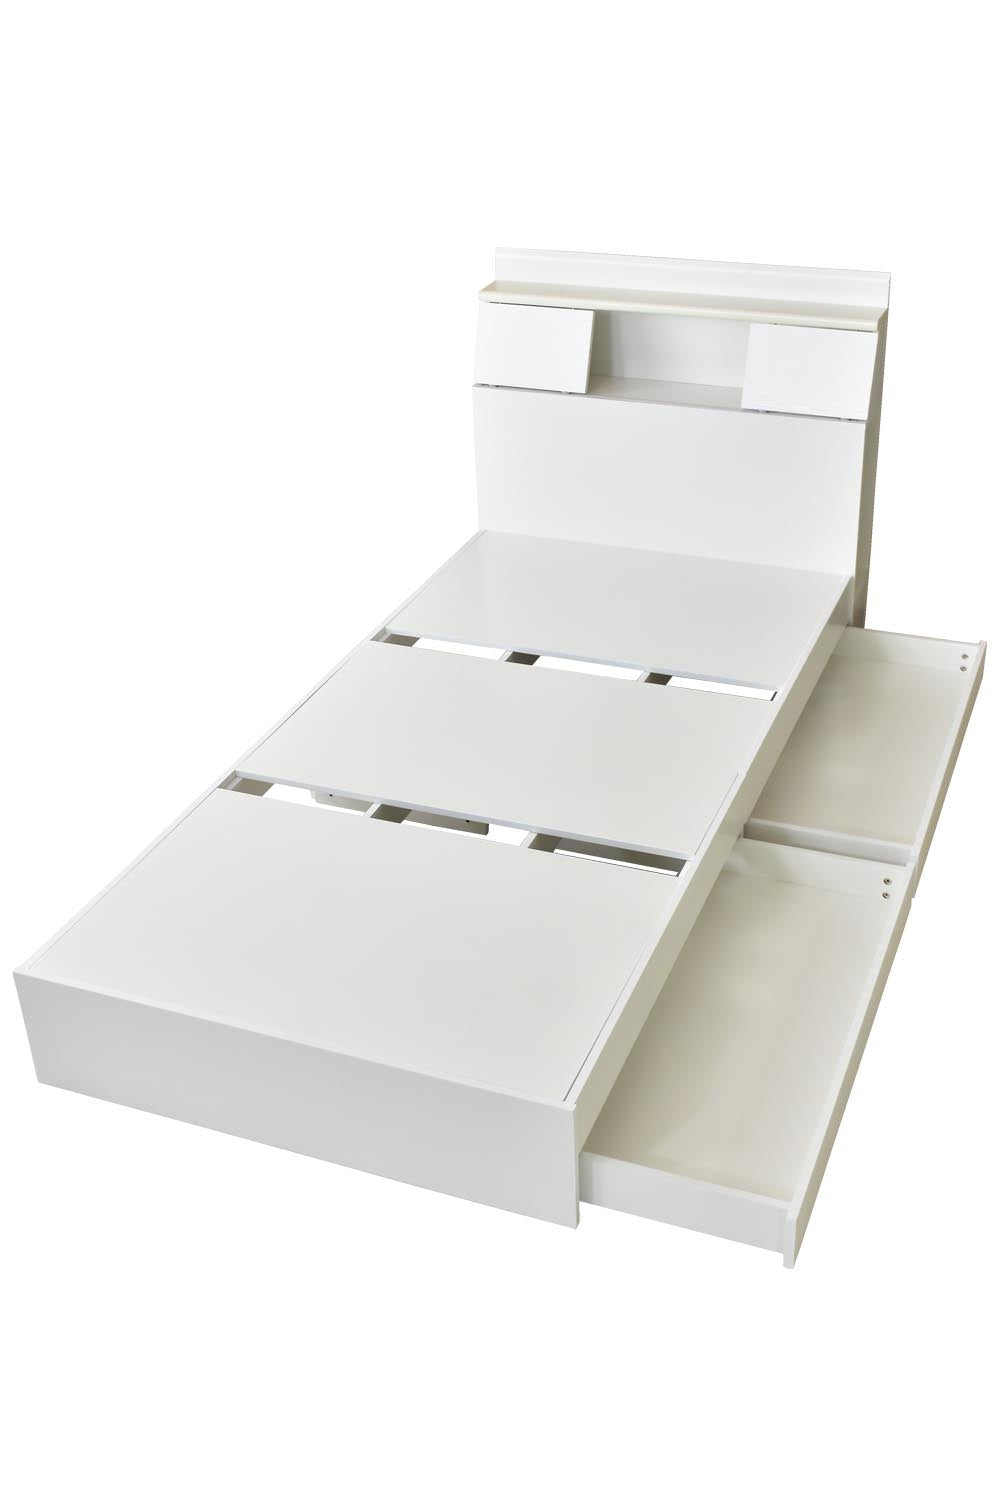 ベッド ダブル フレーム 収納付き スライド扉 コンセント 組立式 グラード